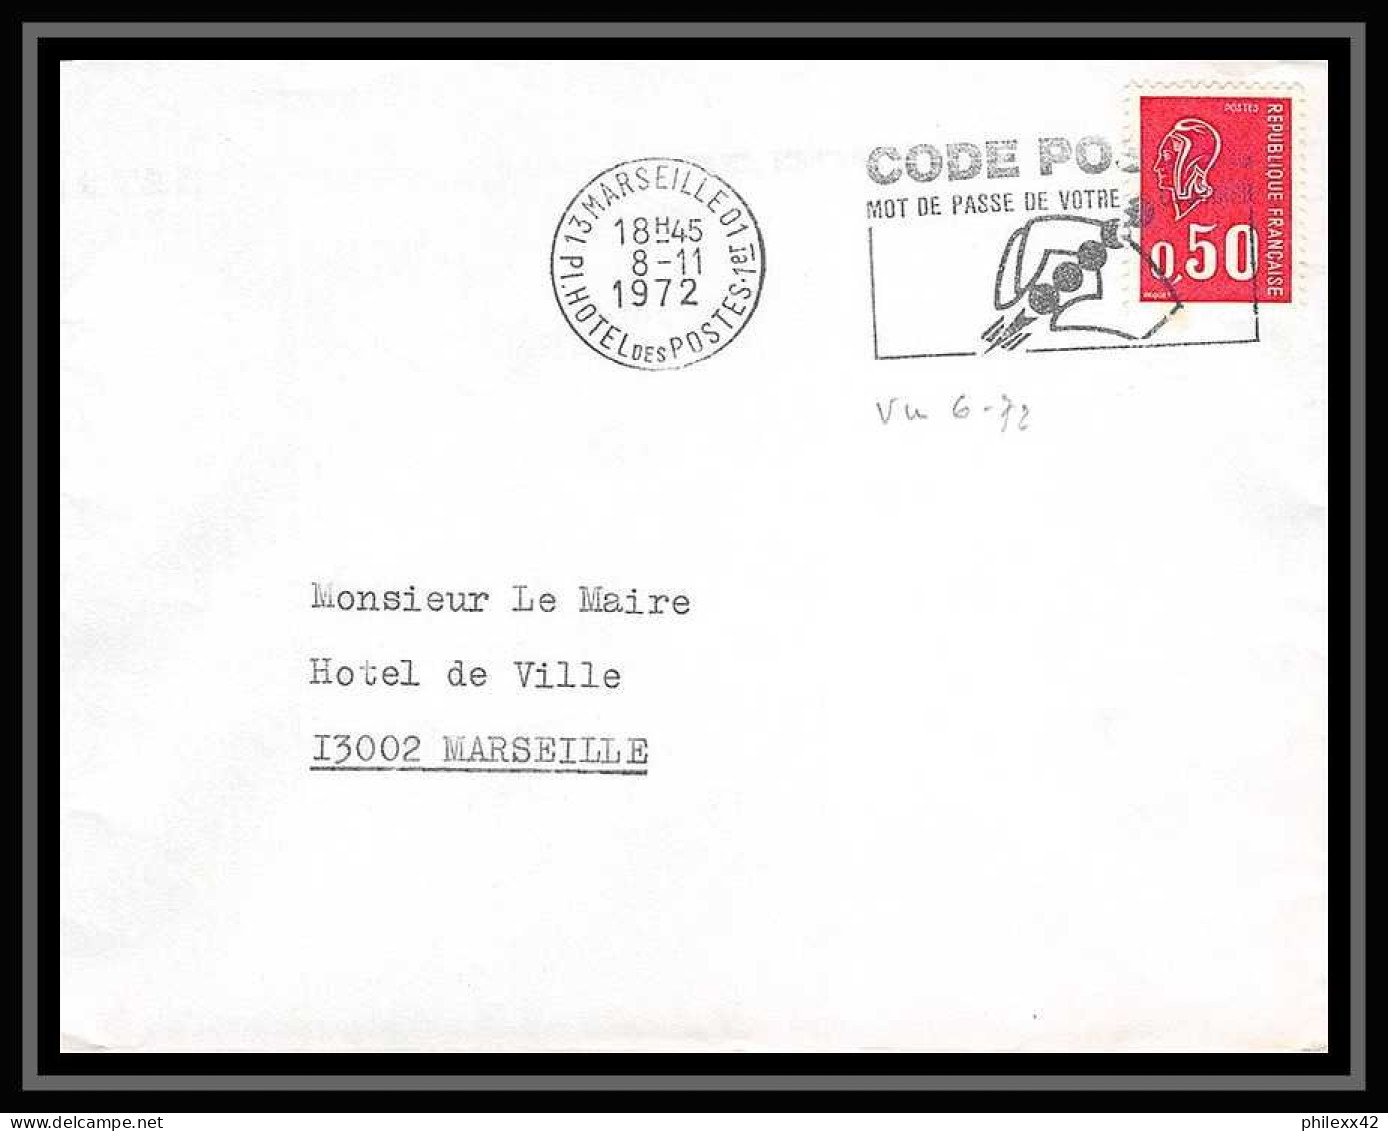 115865 lot de 20 Lettres cover Bouches du rhone Marseille 1er arrondissement